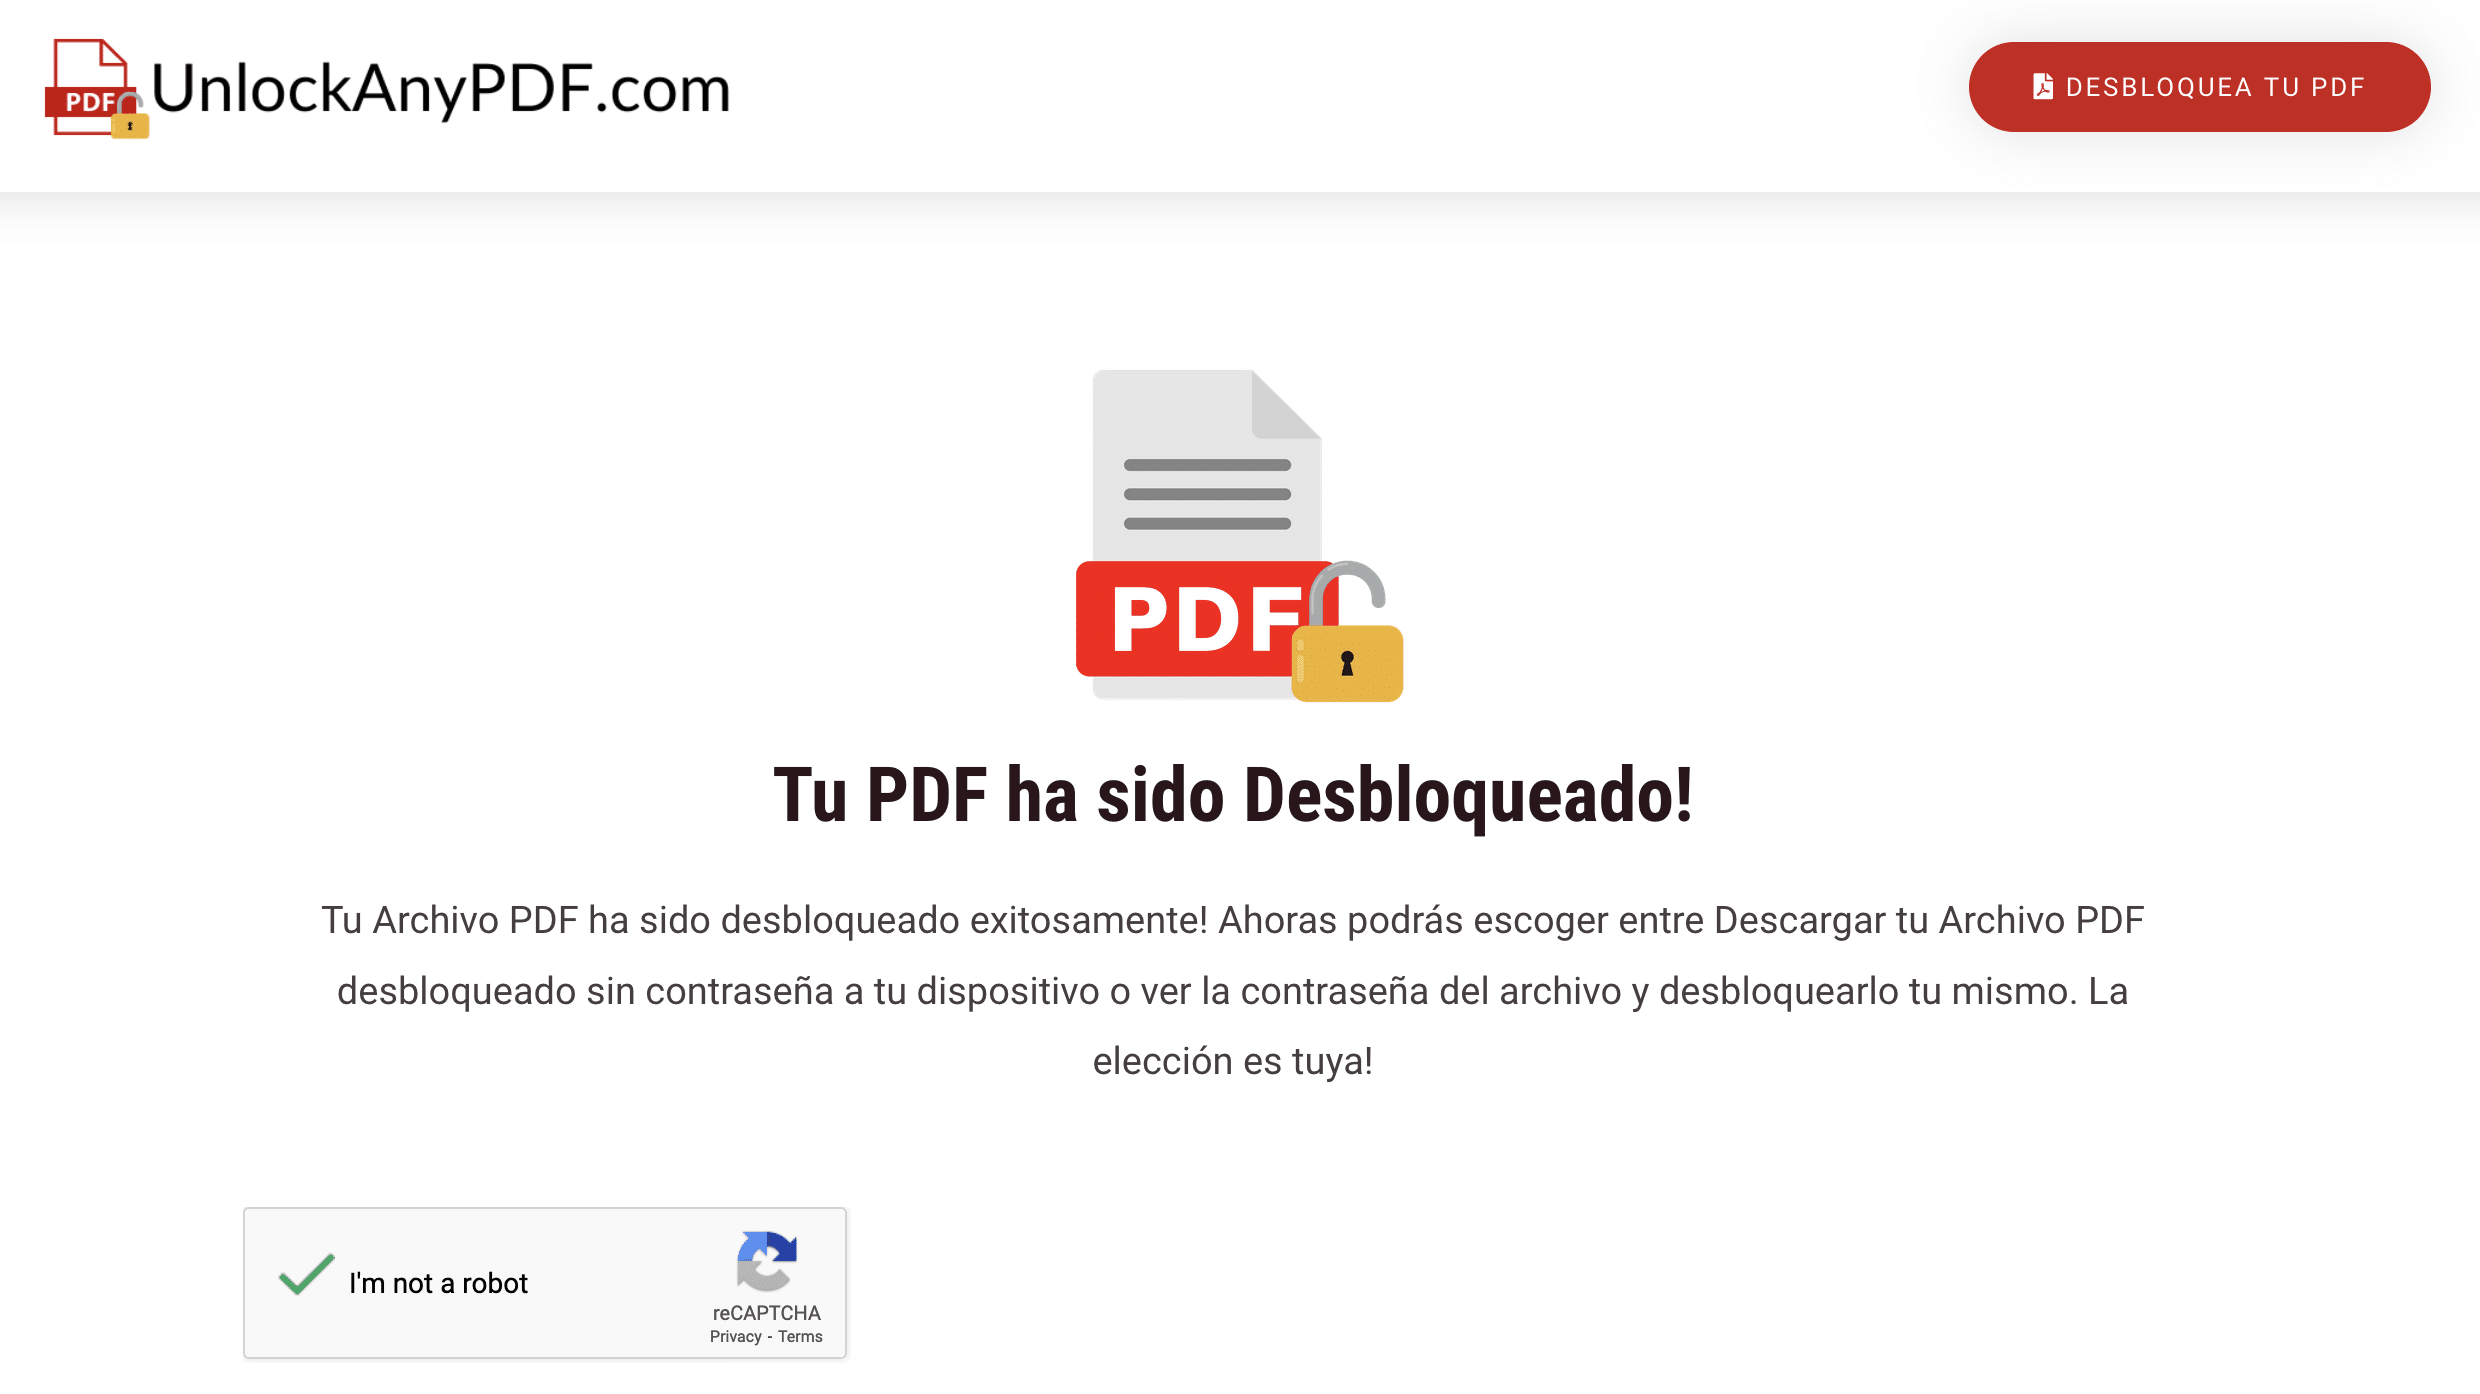 Desbloquea tu PDF